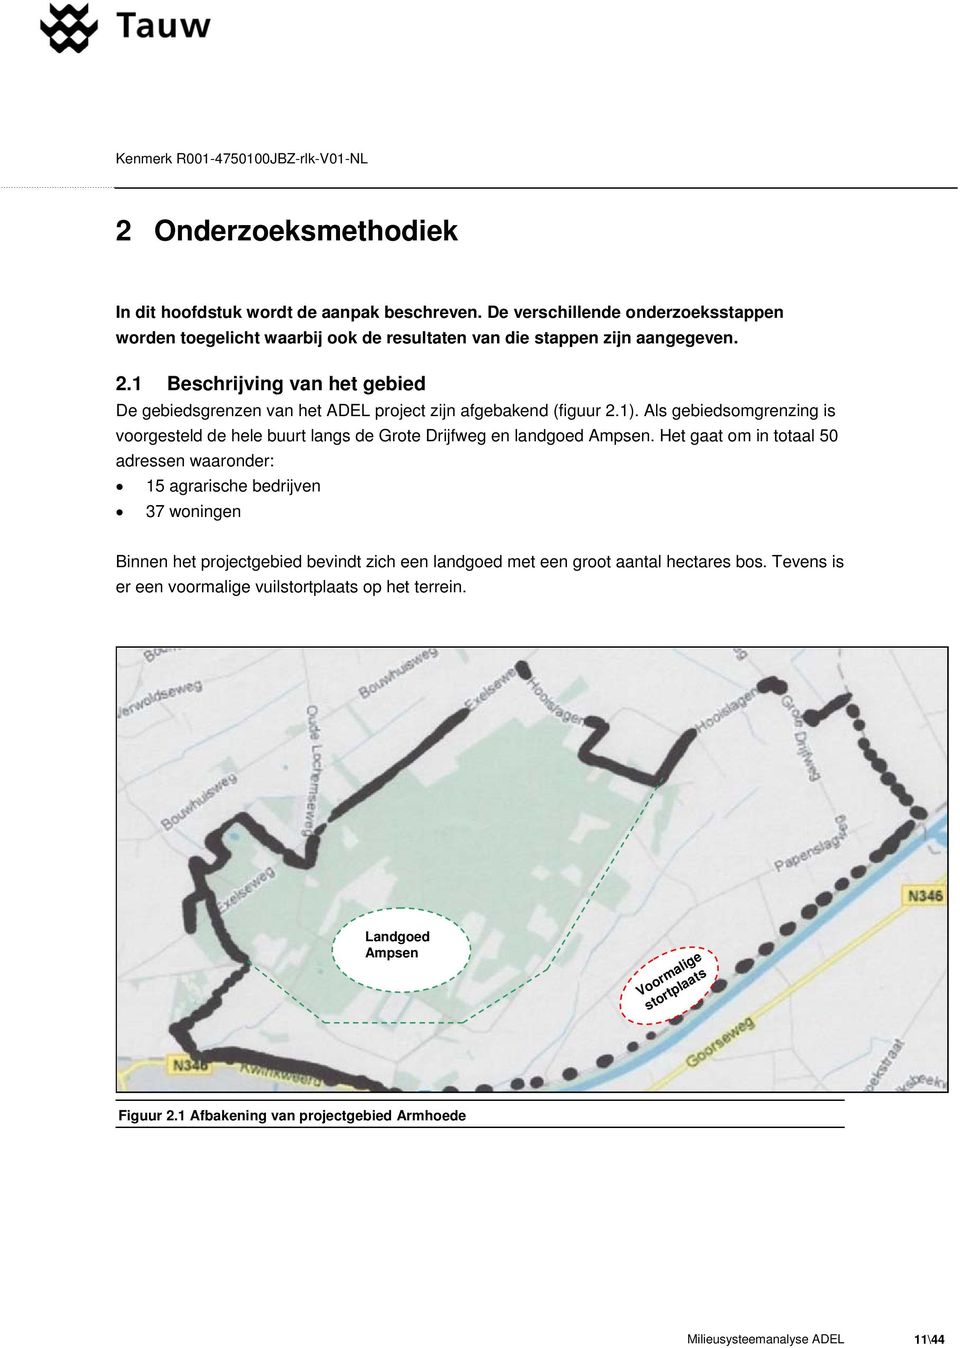 Als gebiedsomgrenzing is voorgesteld de hele buurt langs de Grote Drijfweg en landgoed Ampsen.